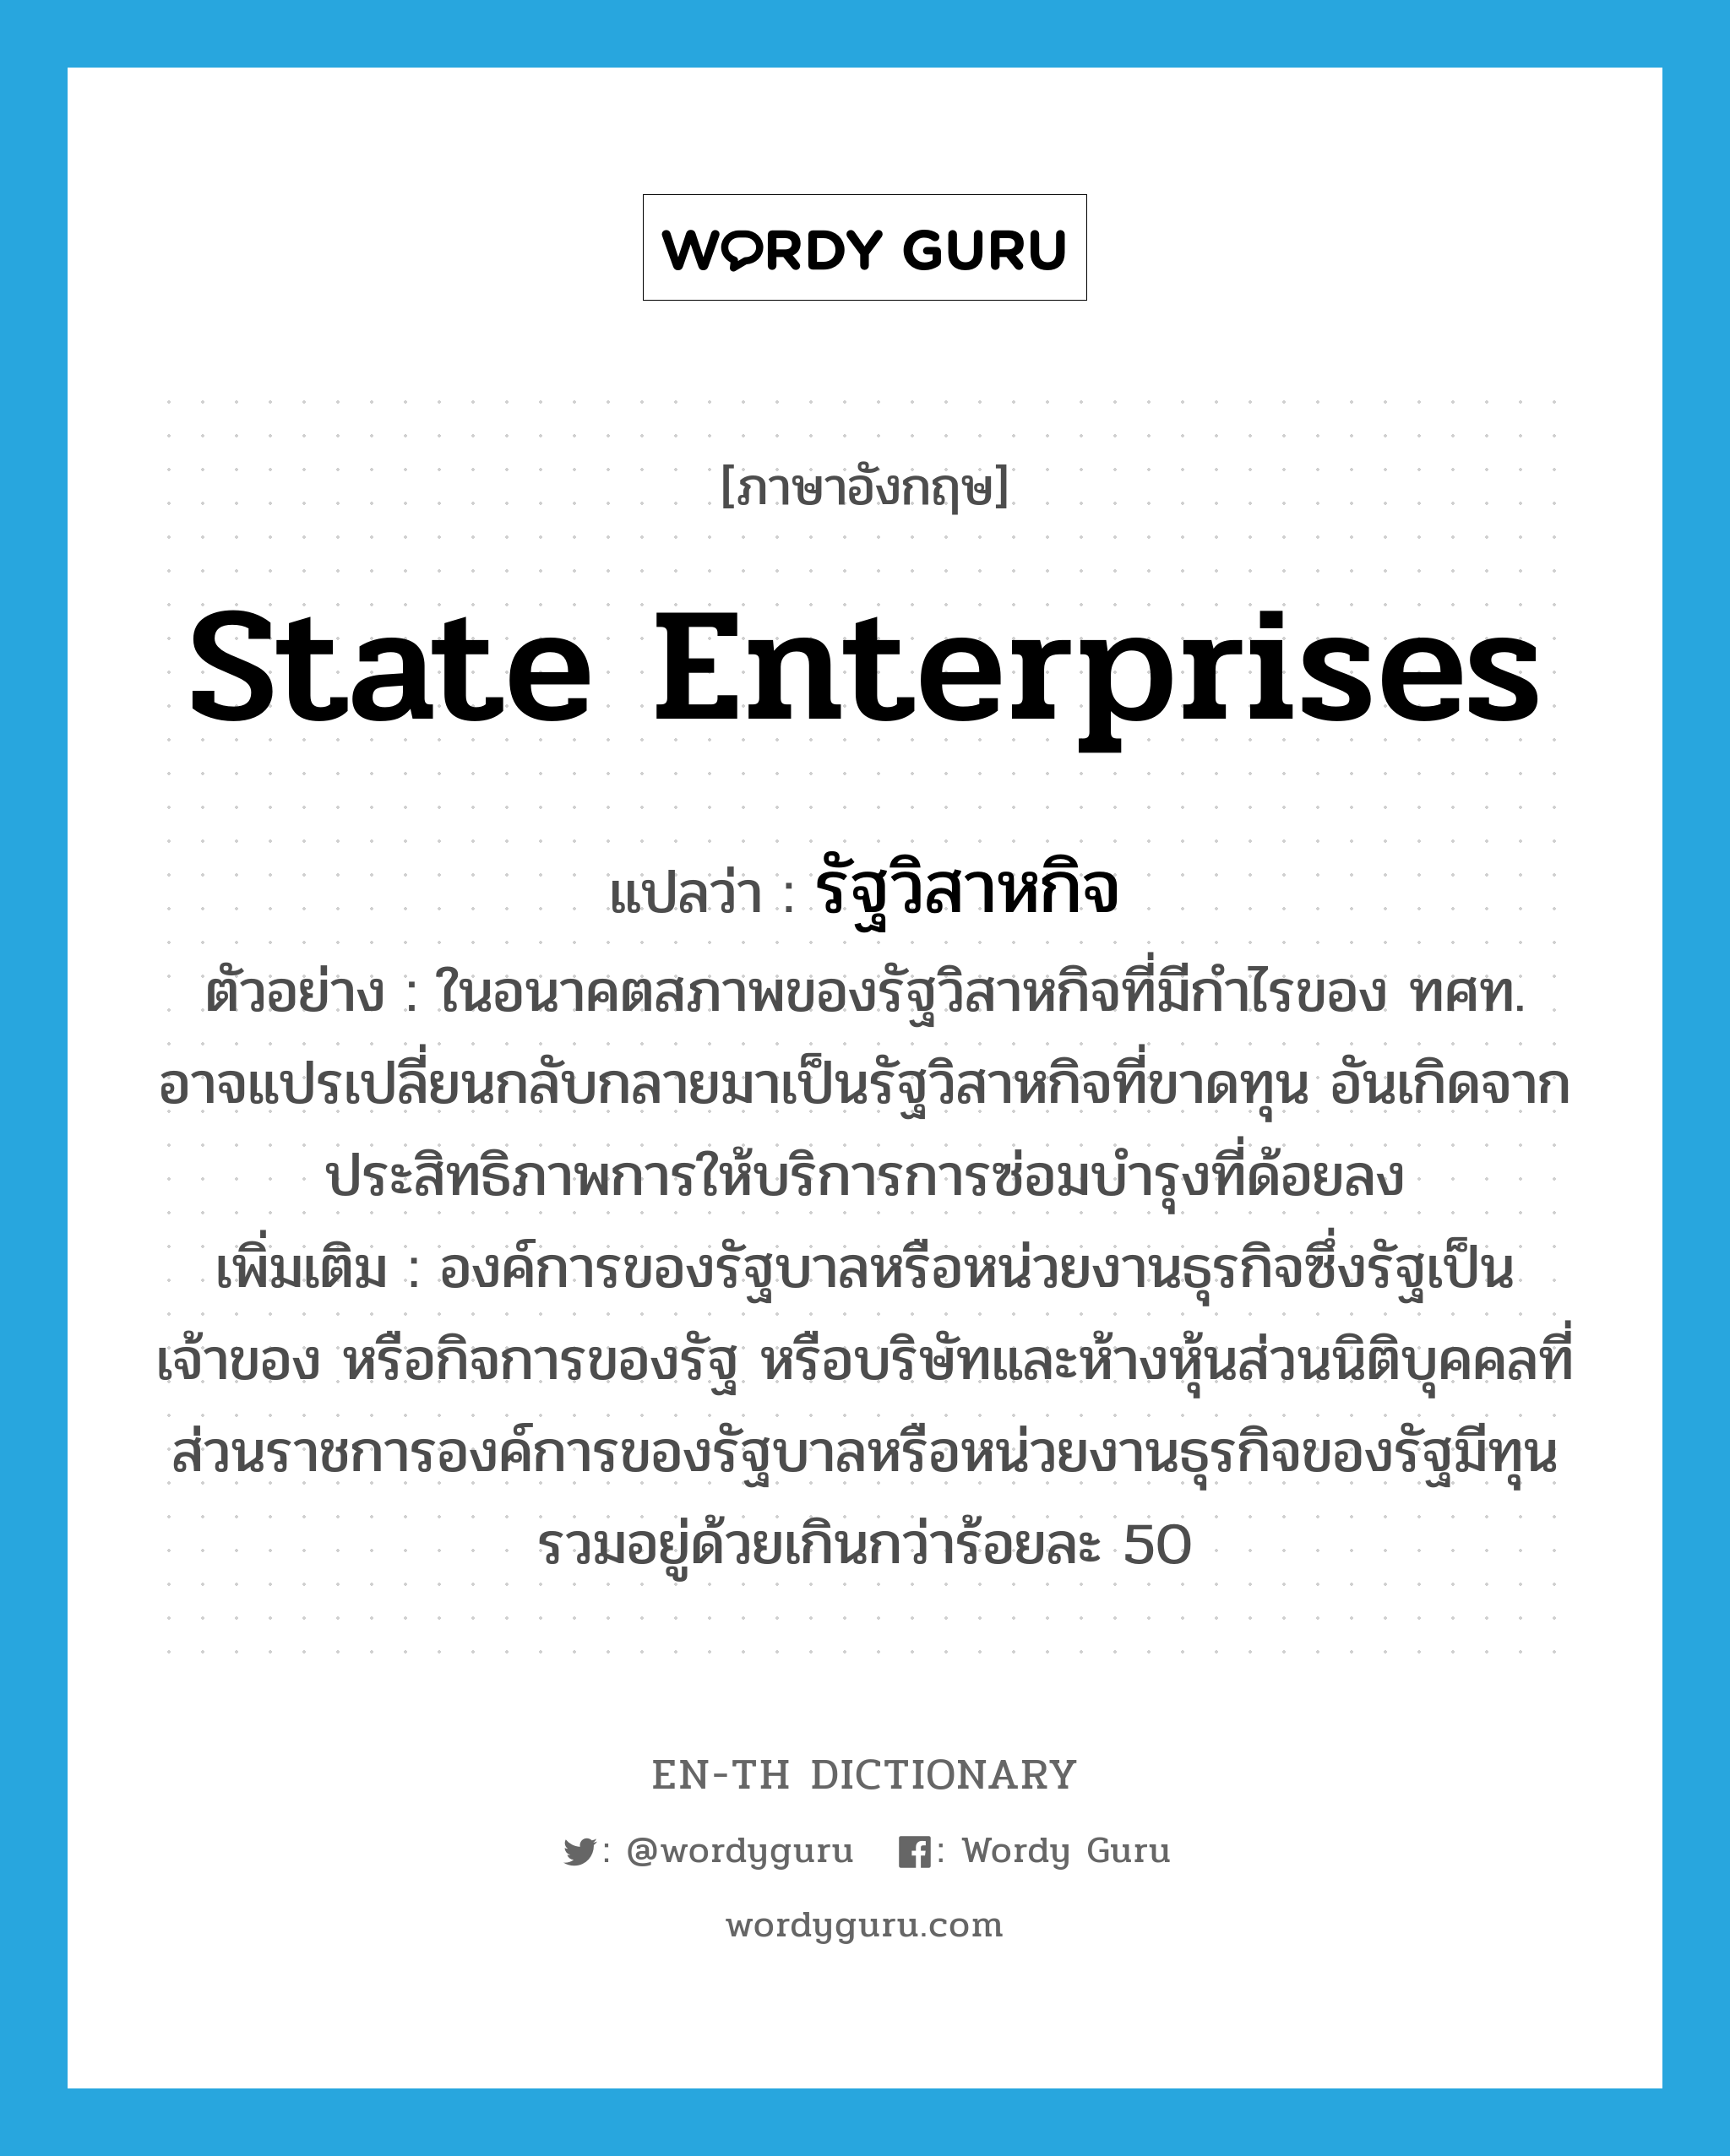 State Enterprises แปลว่า?, คำศัพท์ภาษาอังกฤษ State Enterprises แปลว่า รัฐวิสาหกิจ ประเภท N ตัวอย่าง ในอนาคตสภาพของรัฐวิสาหกิจที่มีกำไรของ ทศท. อาจแปรเปลี่ยนกลับกลายมาเป็นรัฐวิสาหกิจที่ขาดทุน อันเกิดจากประสิทธิภาพการให้บริการการซ่อมบำรุงที่ด้อยลง เพิ่มเติม องค์การของรัฐบาลหรือหน่วยงานธุรกิจซึ่งรัฐเป็นเจ้าของ หรือกิจการของรัฐ หรือบริษัทและห้างหุ้นส่วนนิติบุคคลที่ส่วนราชการองค์การของรัฐบาลหรือหน่วยงานธุรกิจของรัฐมีทุนรวมอยู่ด้วยเกินกว่าร้อยละ 50 หมวด N